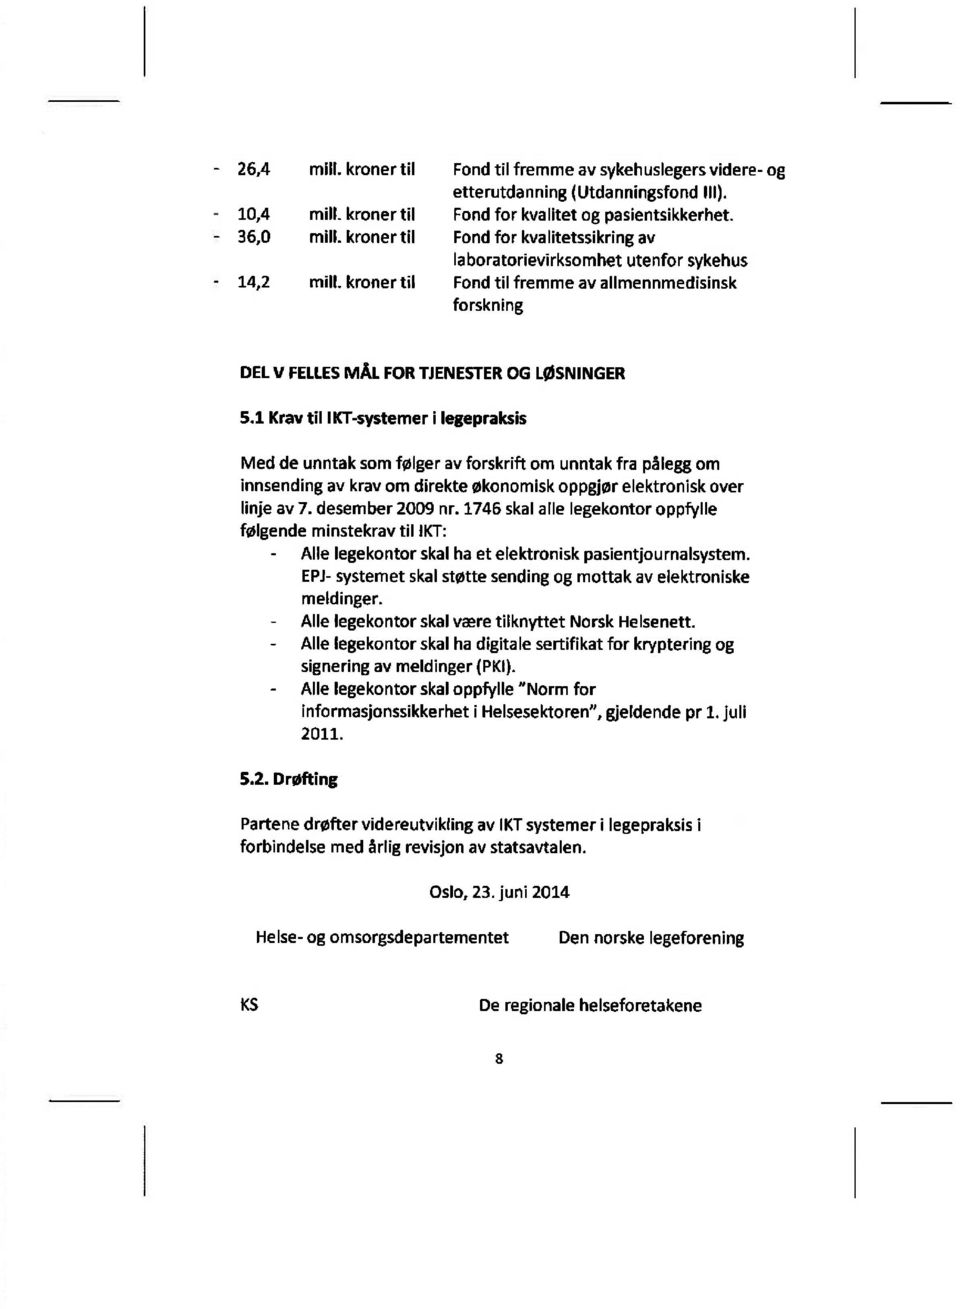 1 Krav til IKT-systemer i legepraksis Med de unntak som fplger av forskrift om unntak fra pålegg om innsending av krav om direkte Økonomisk opggjør elektronisk over linje av 7. desember 2009 nr.